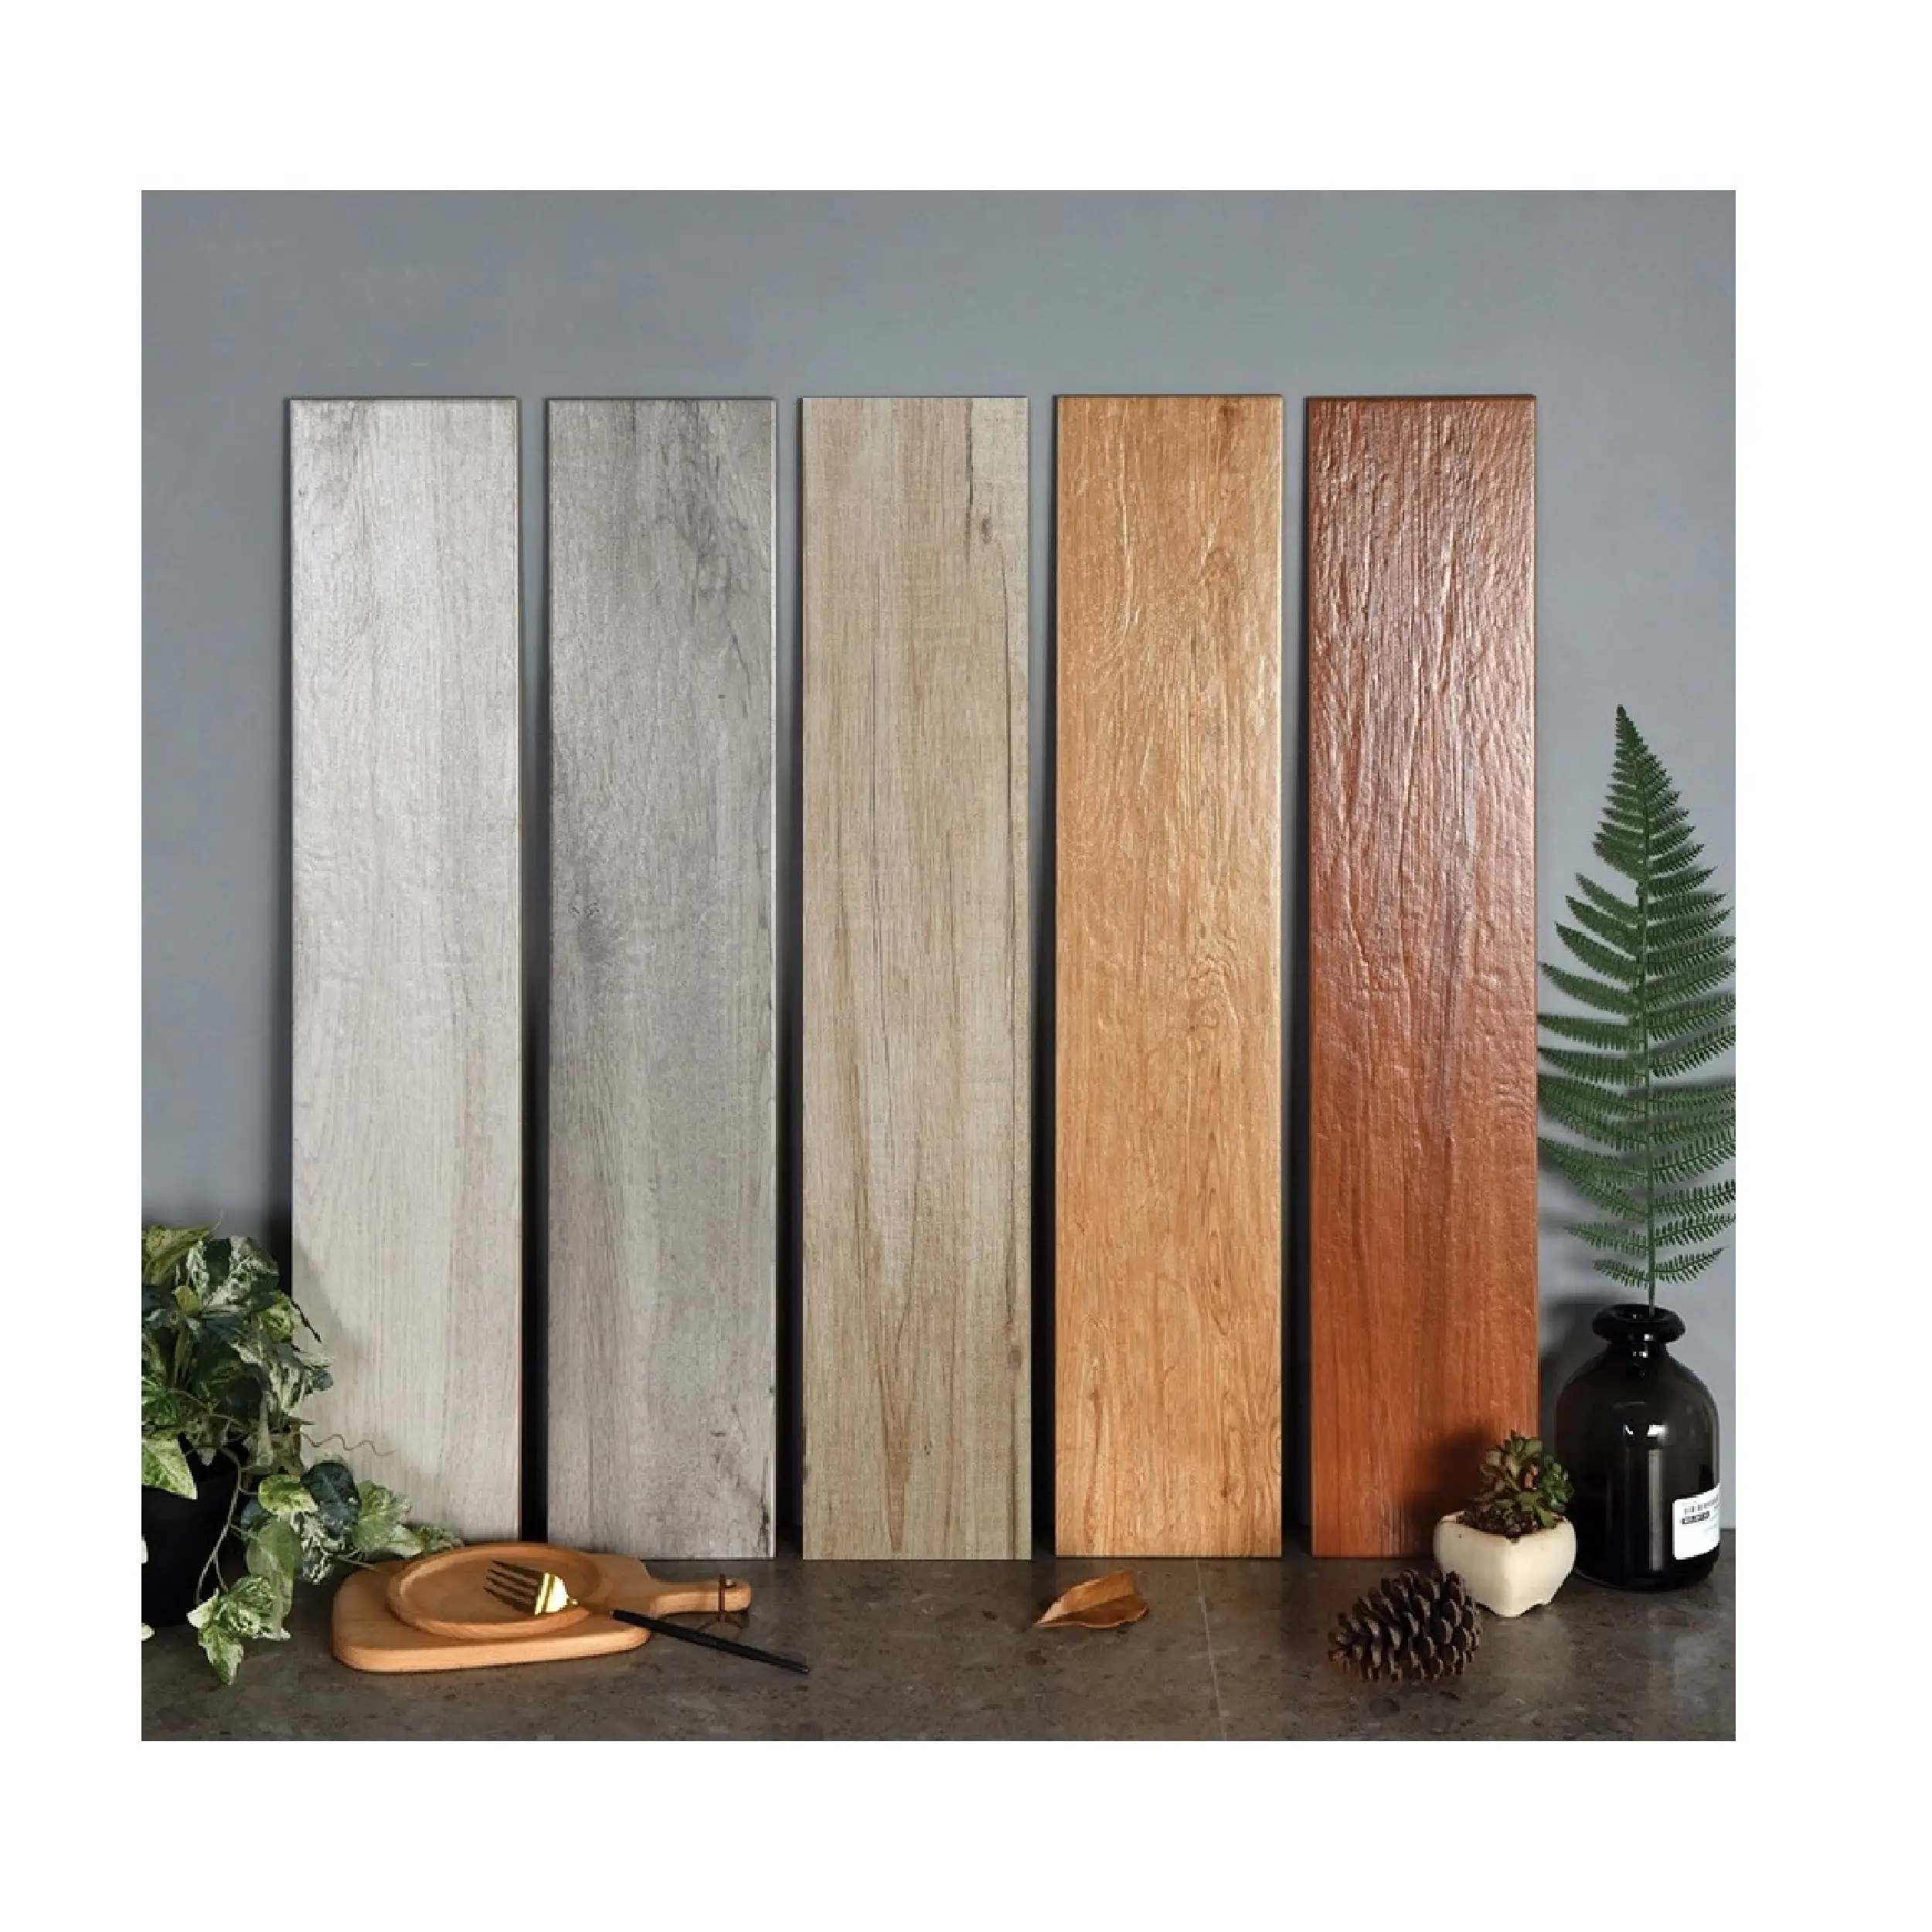 Деревянные доски, плитки 20x100 см, натуральная плитка, напольная и настенная плитка, цифровая матовая отделка, вдохновленная природой